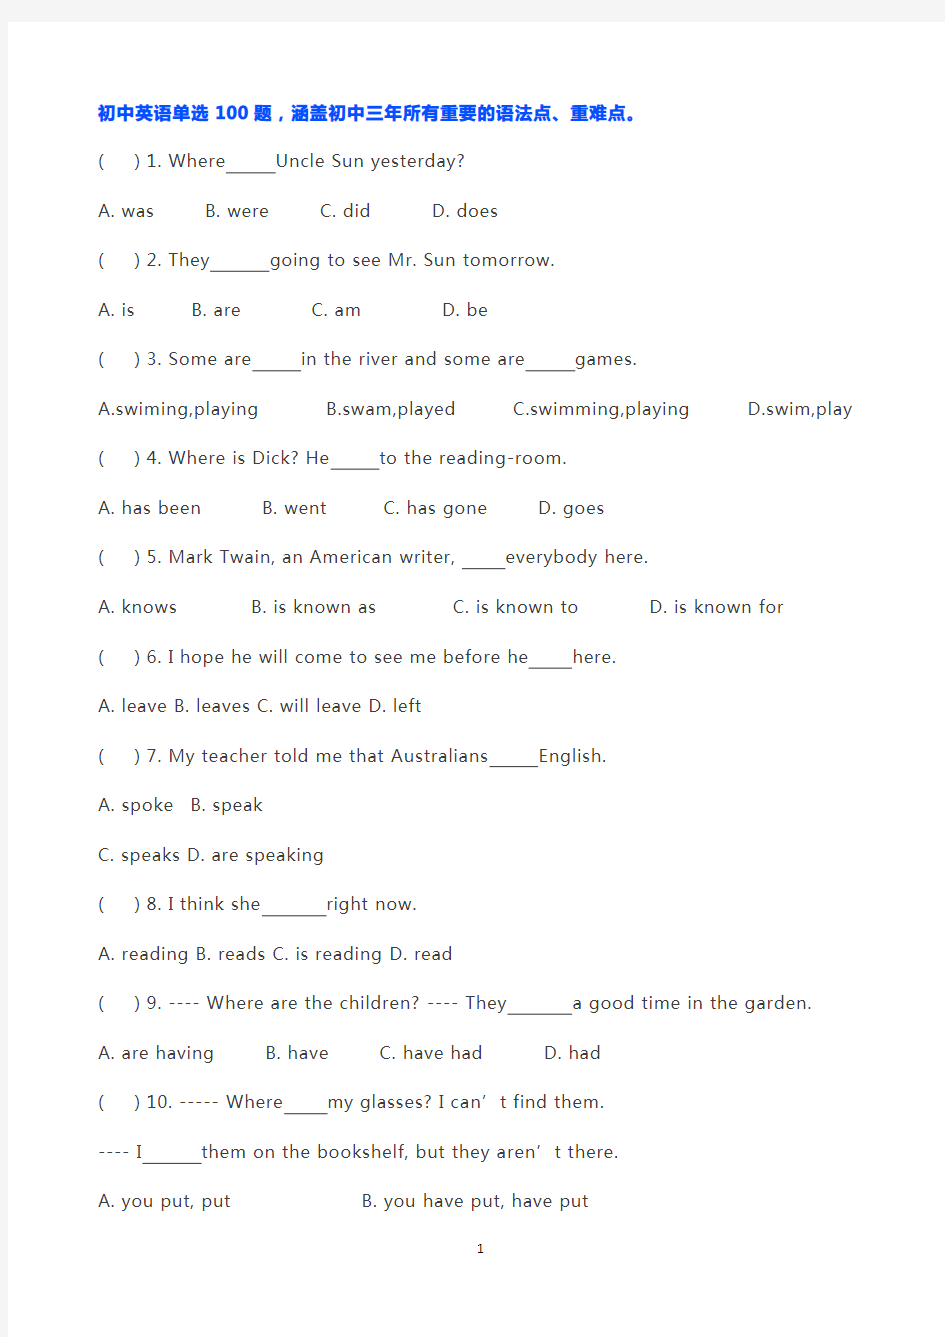 初中英语语法练习(单选100题,包含初中所有语法点)